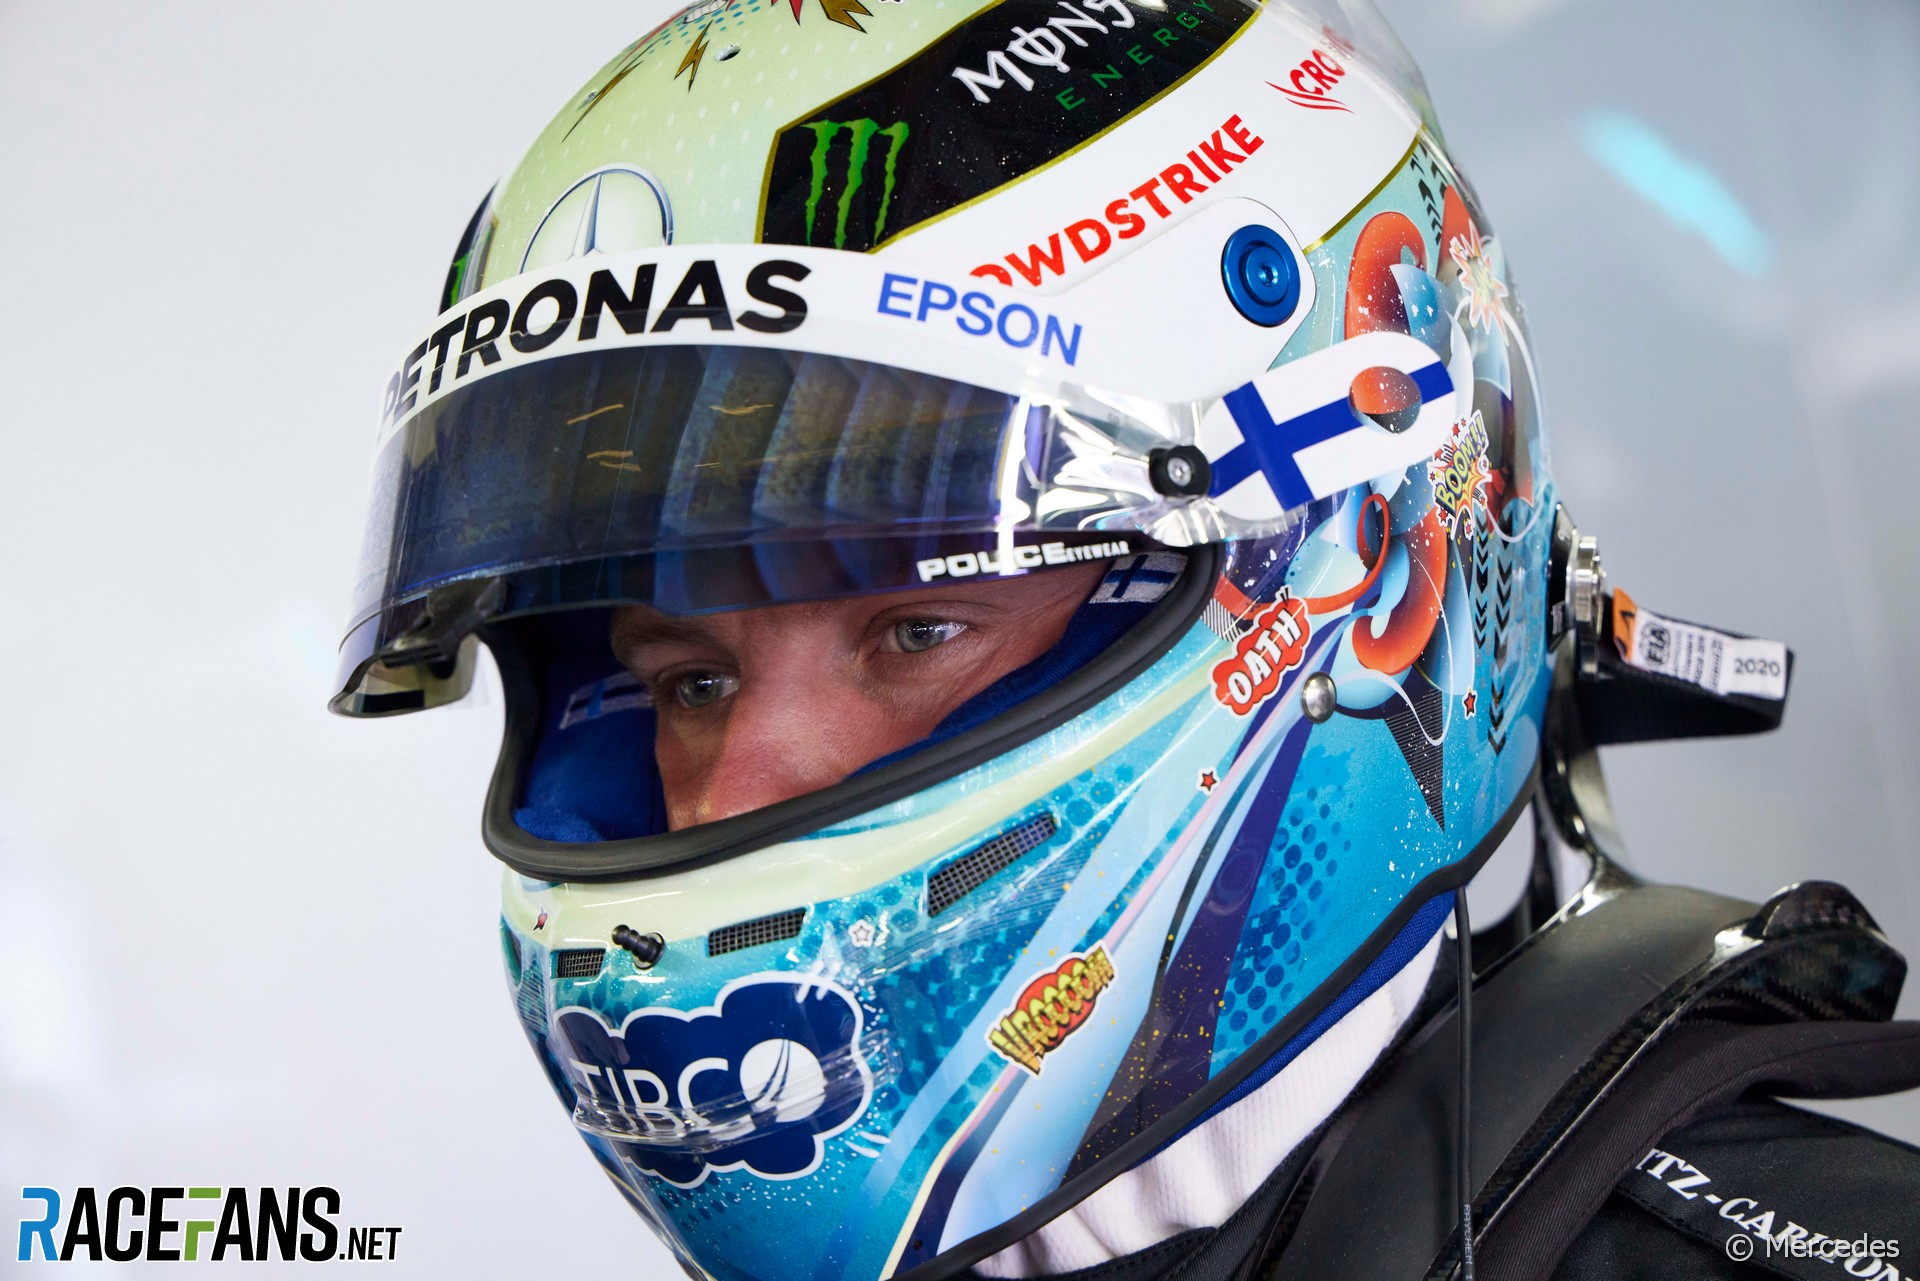 Valtteri Bottas' 2021 Monaco Grand Prix helmet